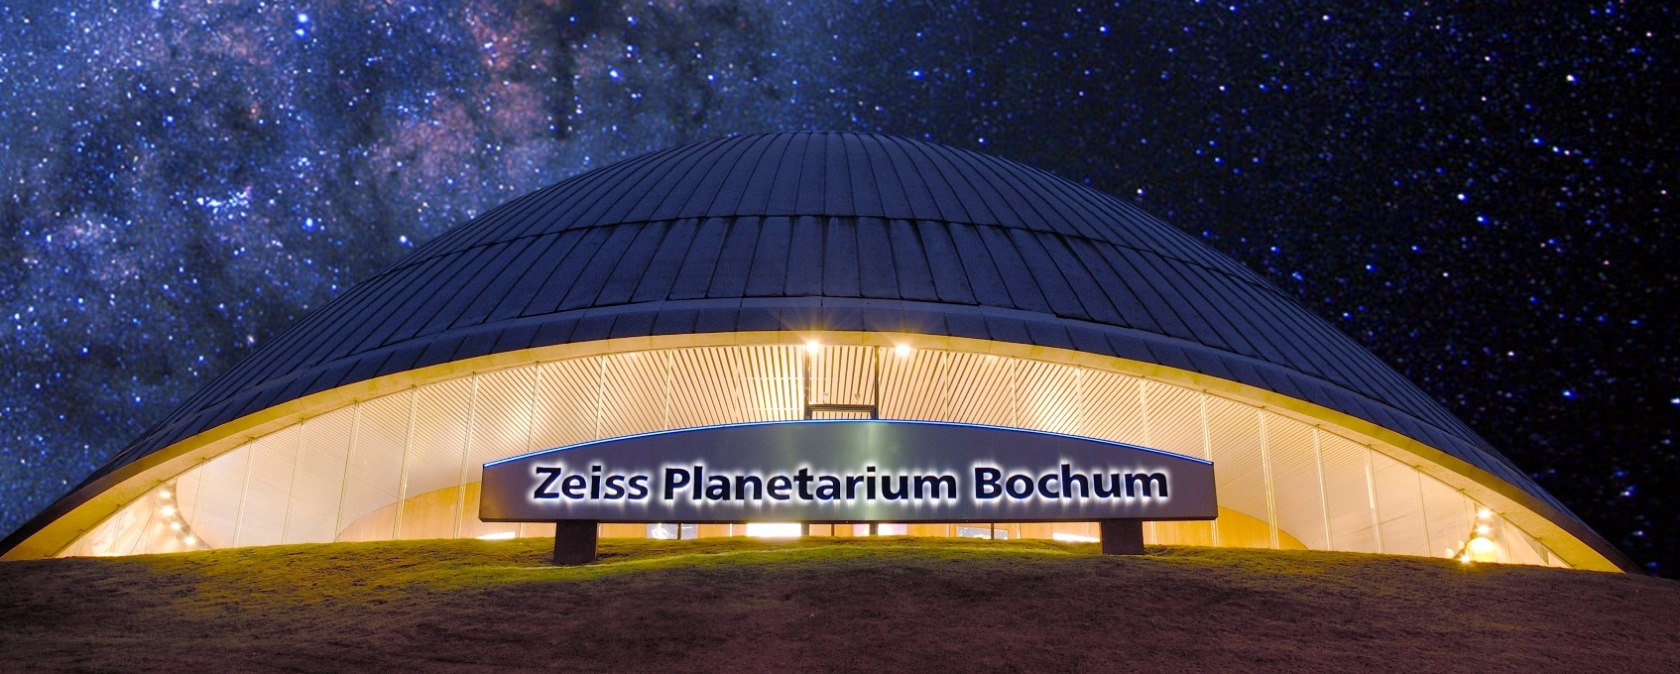 Zeiss Planetarium Bochum, Außenansicht mit Schriftzug, © Stadt Bochum Presse und Informationsamt Planetarium